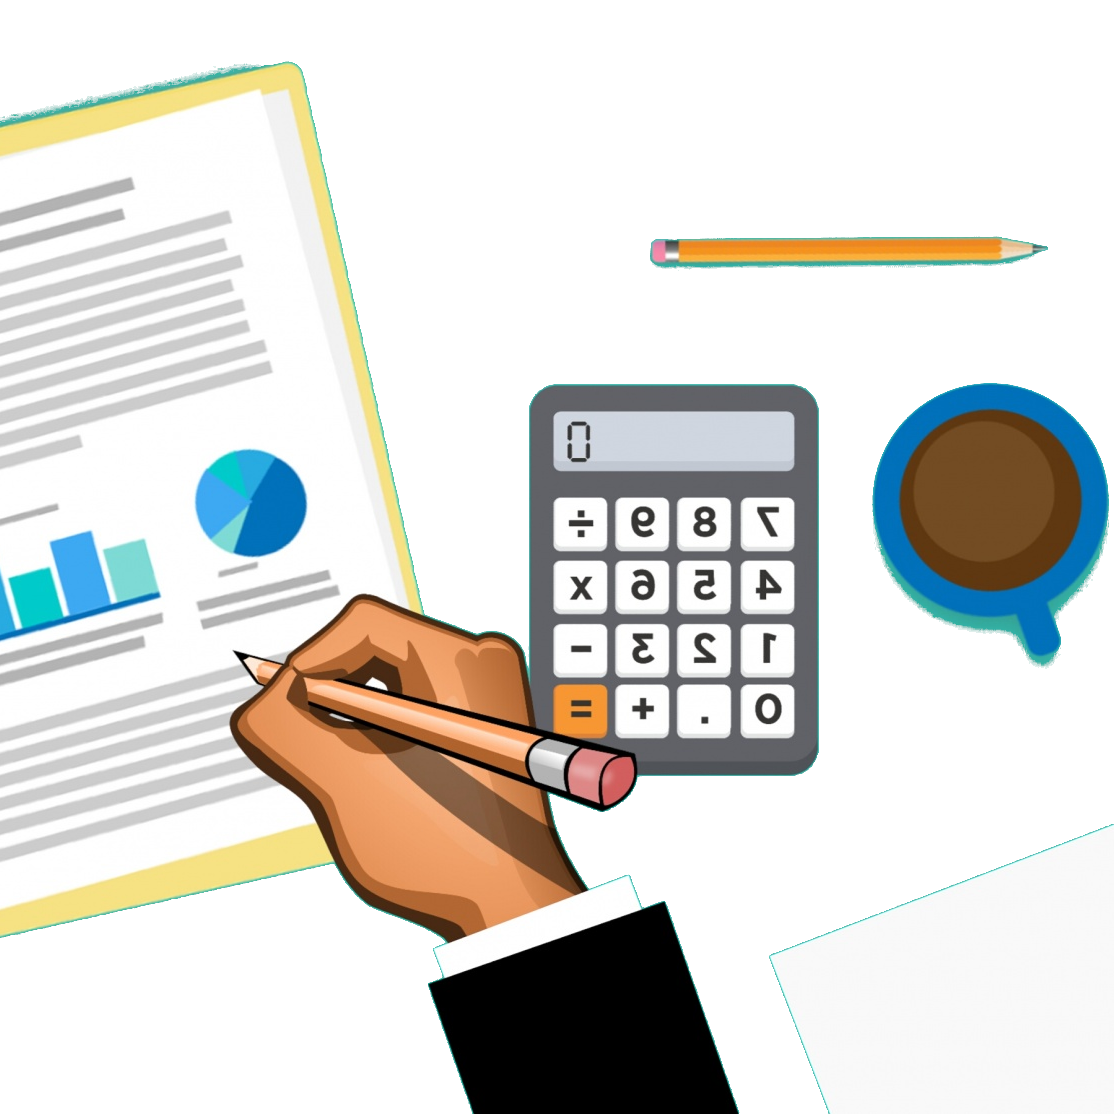 ilustración que muestra una mesa de trabajo en la que se puede ver: un informe, una calculadora, hojas de papel, un lápiz y la mano de una persona que está trabajando